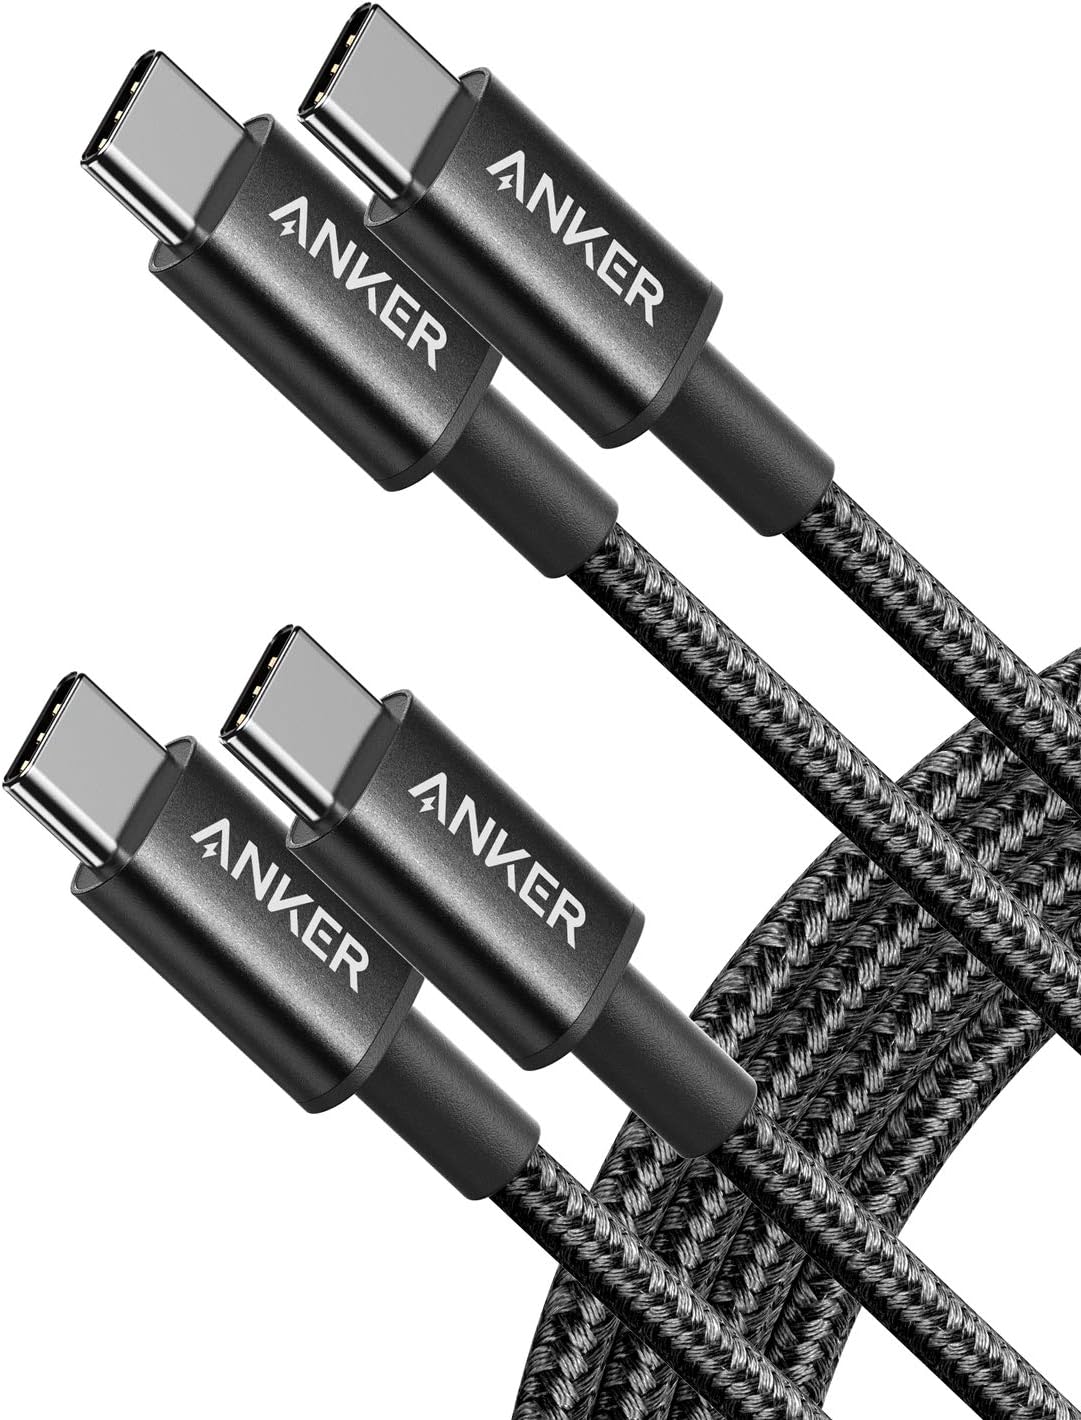 Anker New Nylon Series 3 USB-C sang USB-C 2 gói